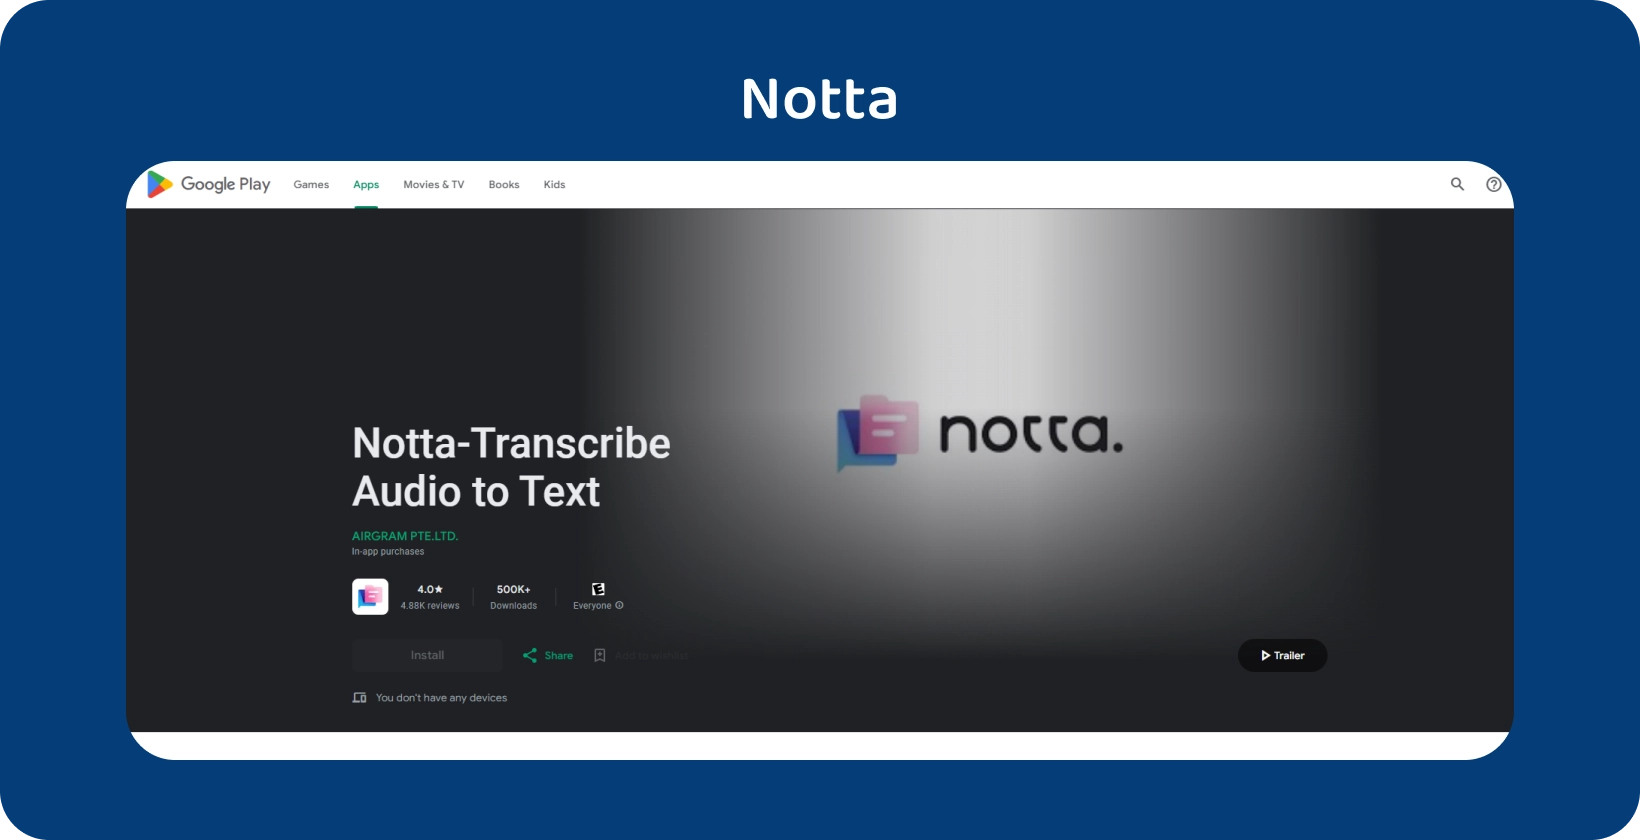 Notta.ai-appen på Google Play, og viser sin evne til å transkribere lyd til tekst nøyaktig på Android.